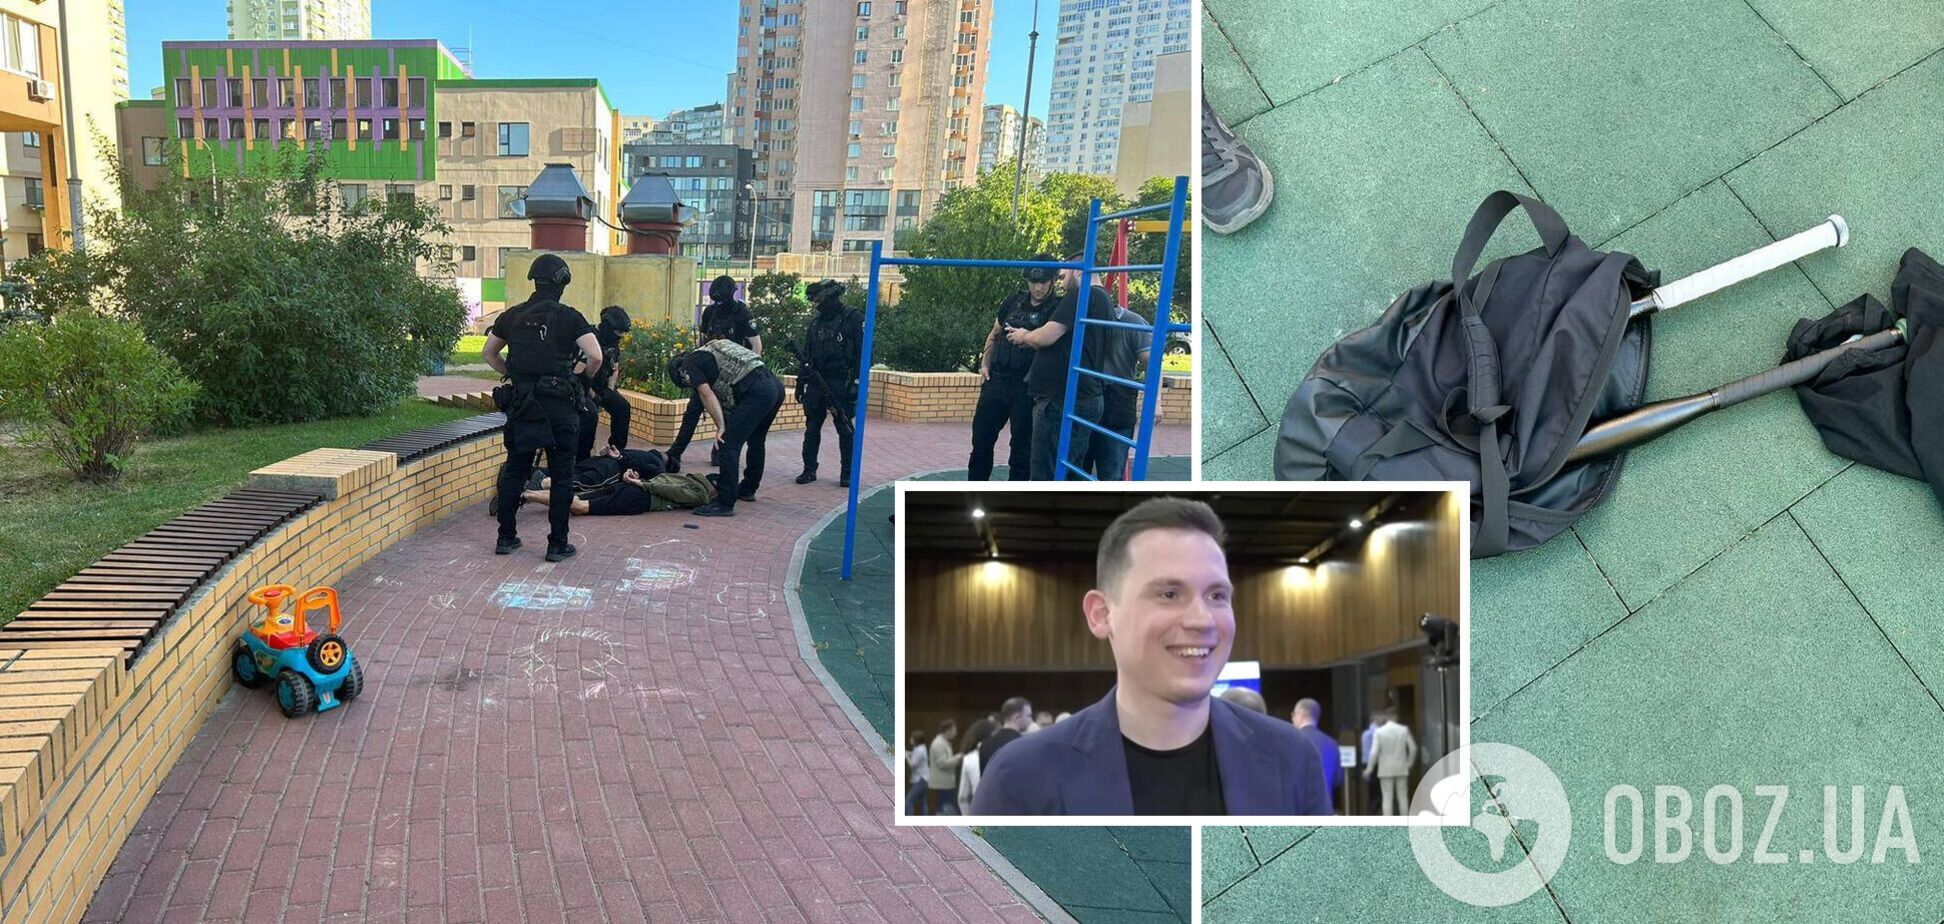 На замглавы Налоговой службы Украины совершено покушение: появились подробности. Фото и видео